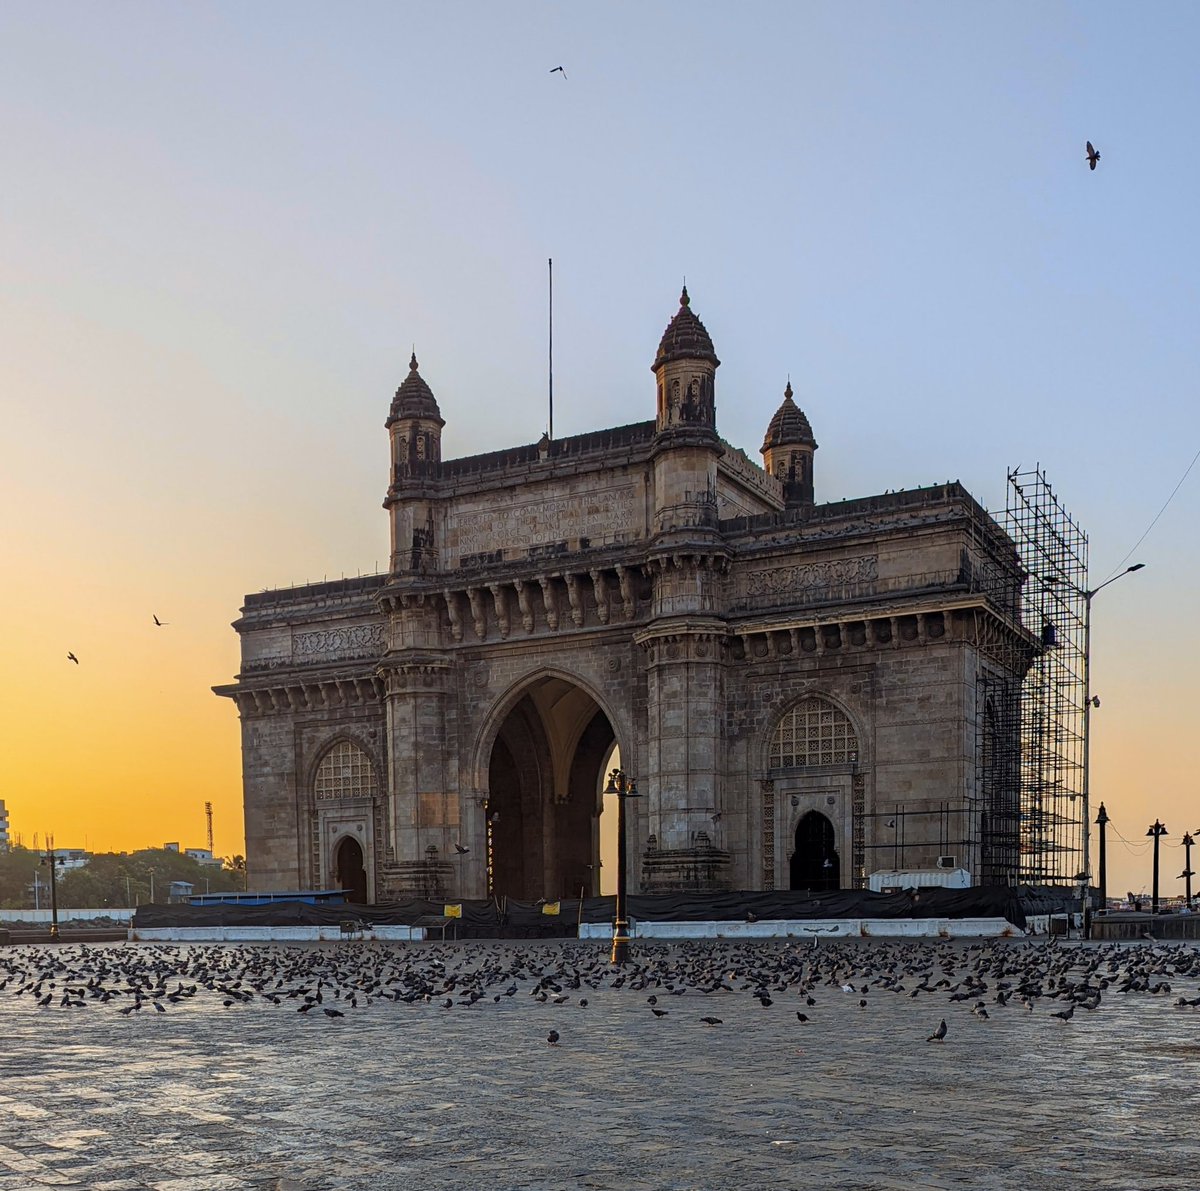 ❤️ #GatewayOfIndia #MumbaiDiaries